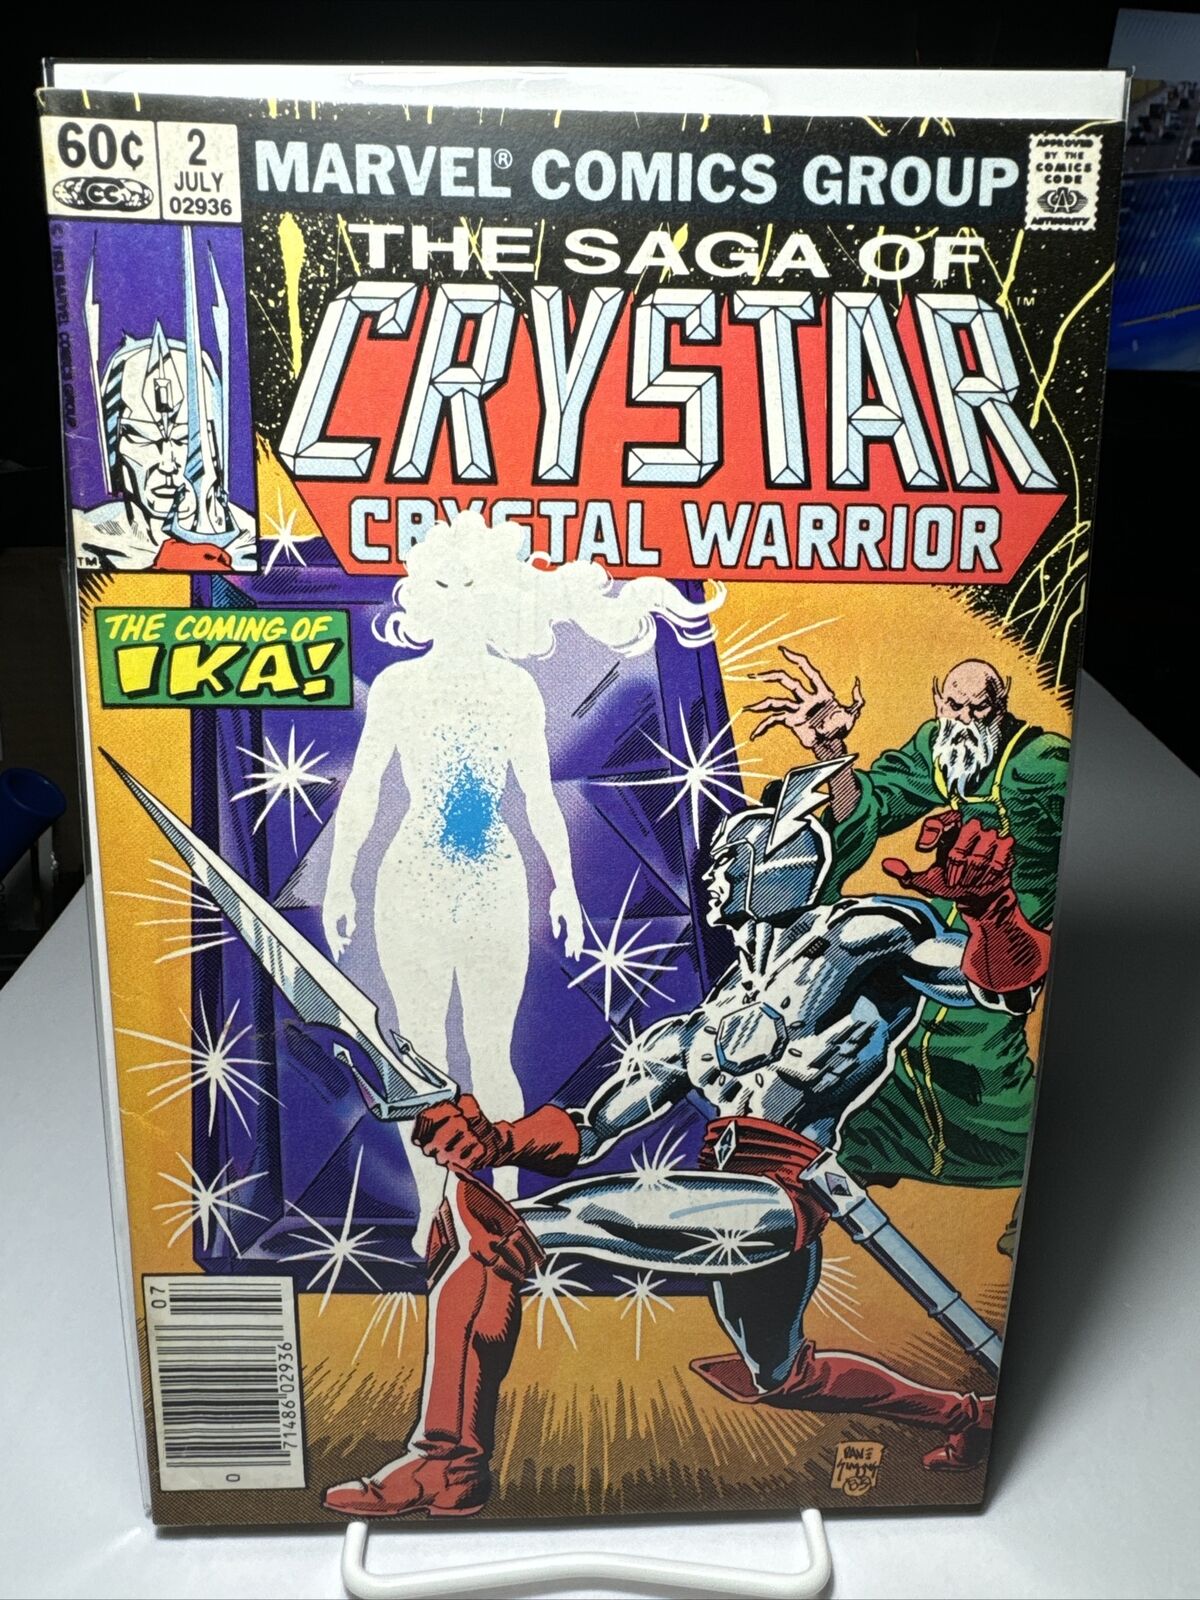 The Saga Of Crystar Crystal Warrior #2 -  1983 Marvel Comics